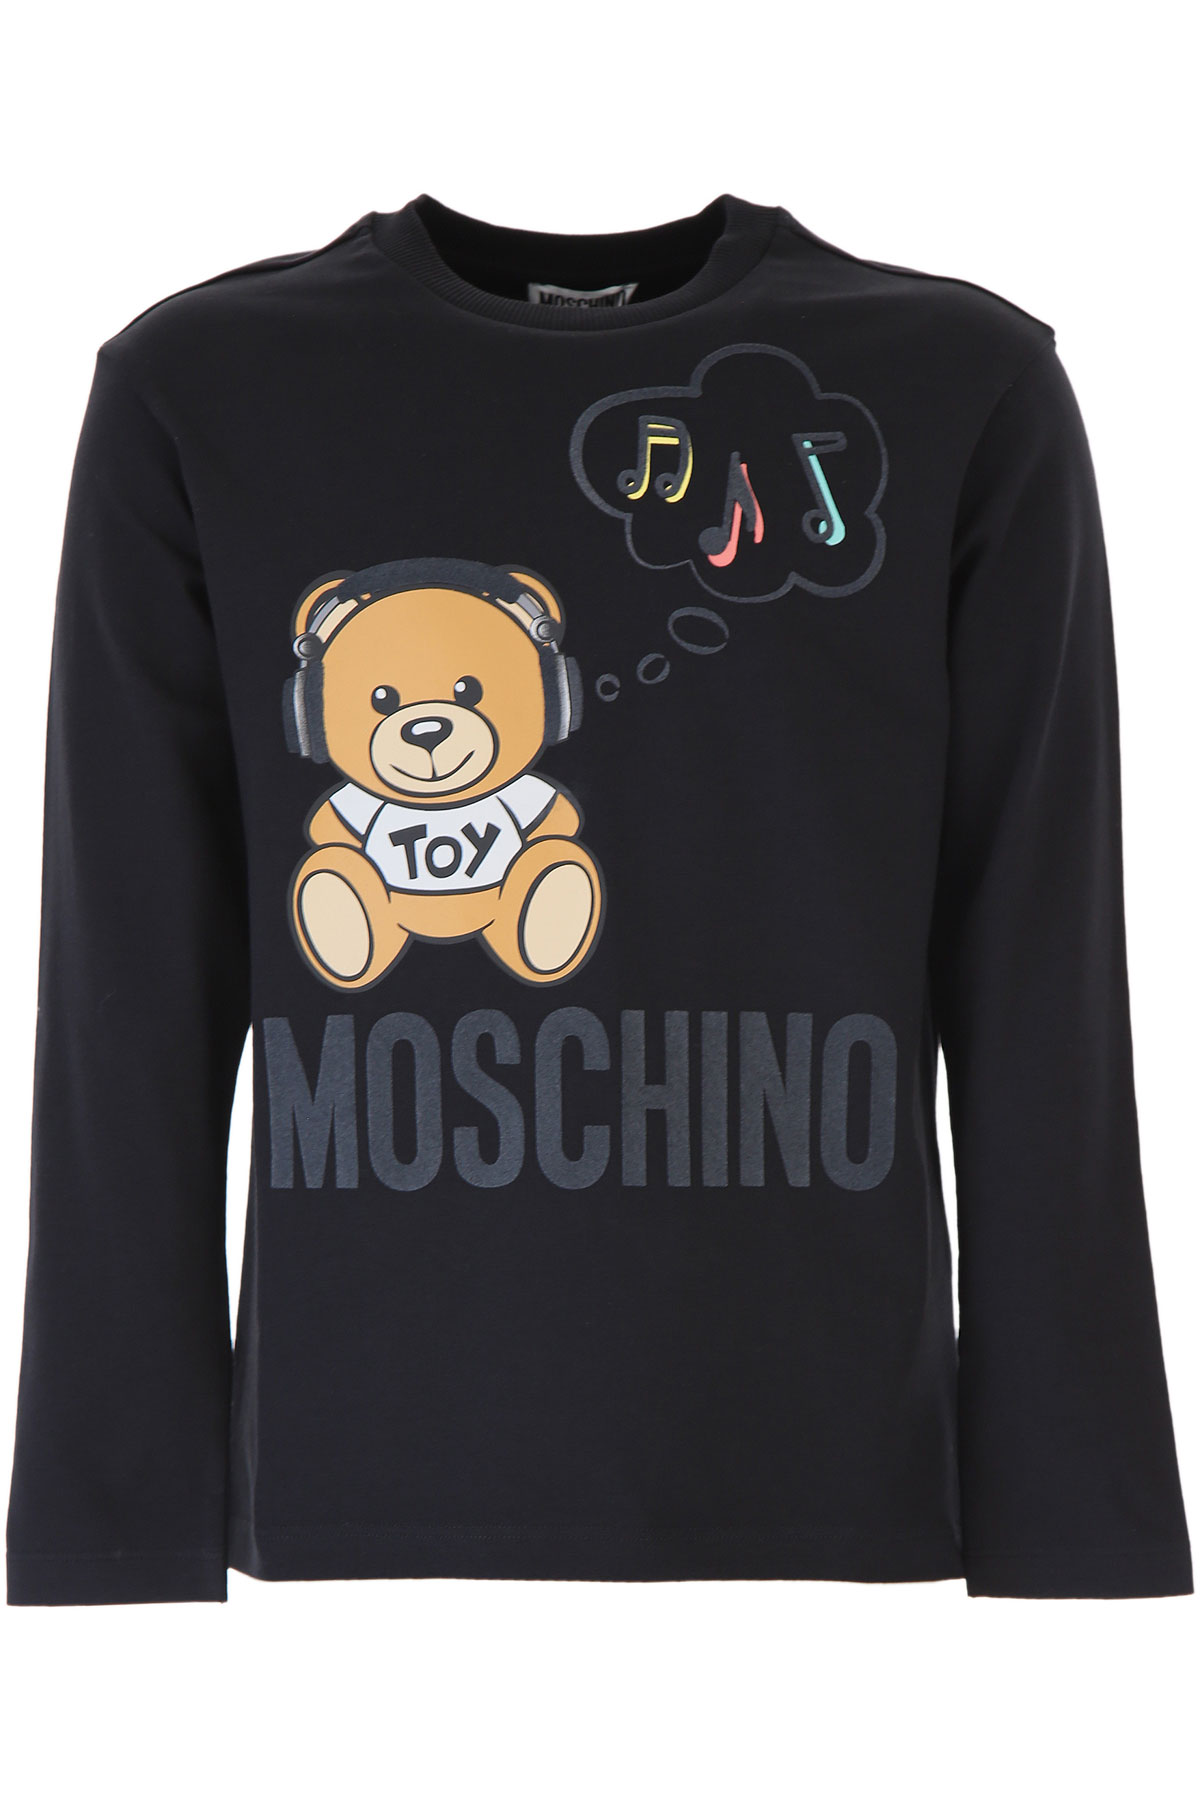 Moschino Kinder T-Shirt für Mädchen Günstig im Sale, Weiss, Baumwolle, 2017, 10Y 12Y 8Y